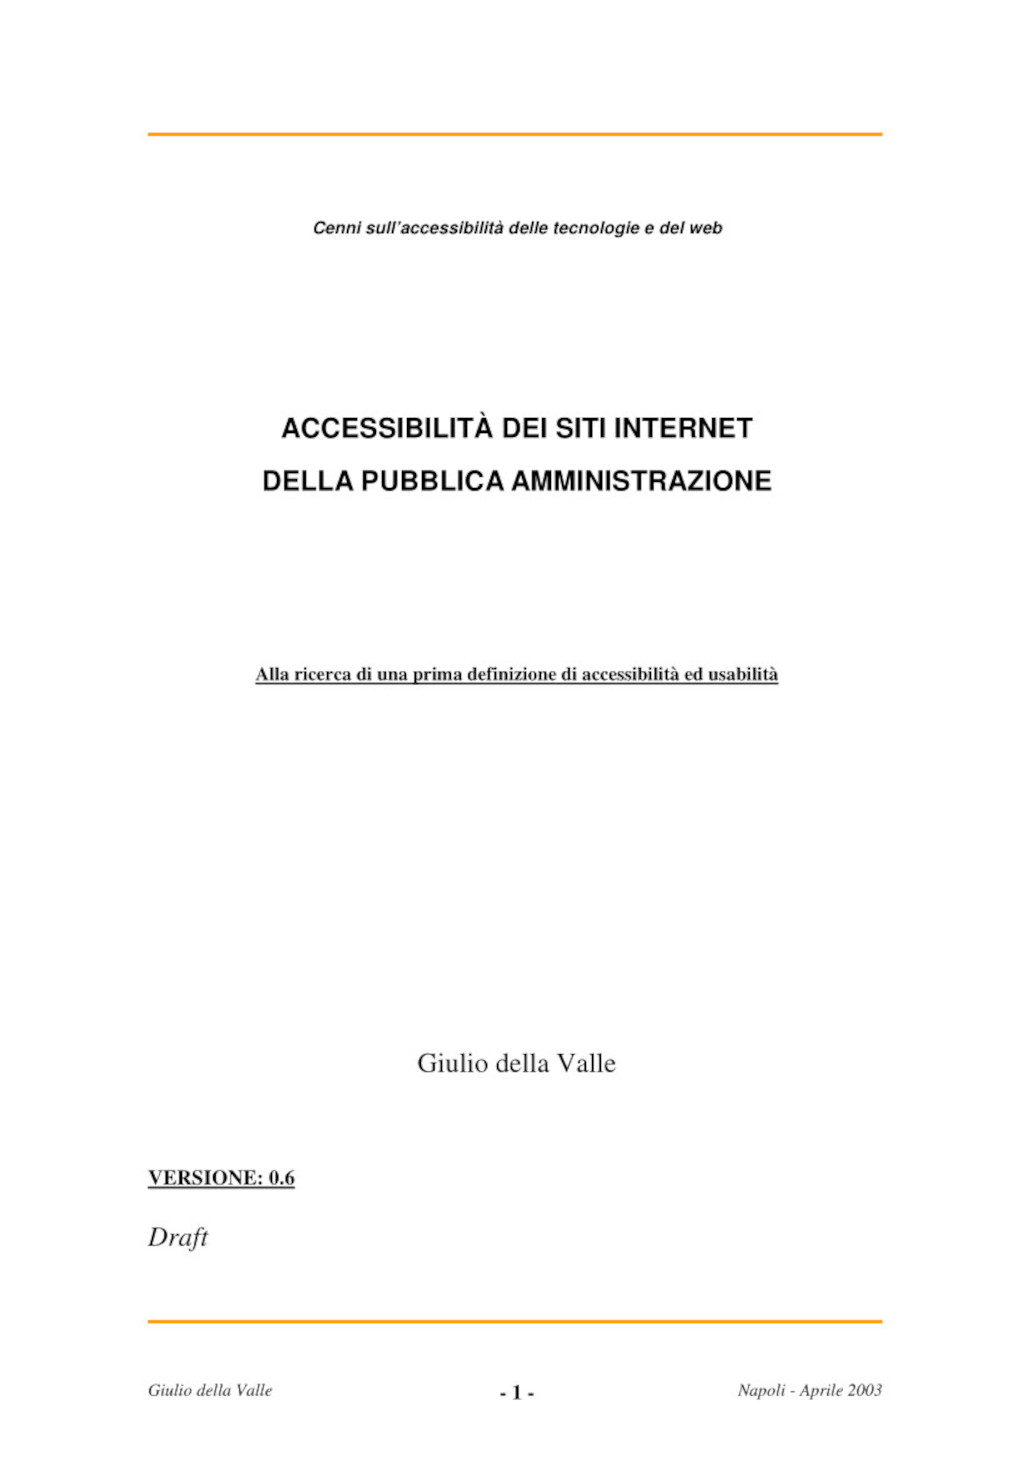 Accessibilità ed Usabilità dei siti internet per la Pubblica Amministrazione